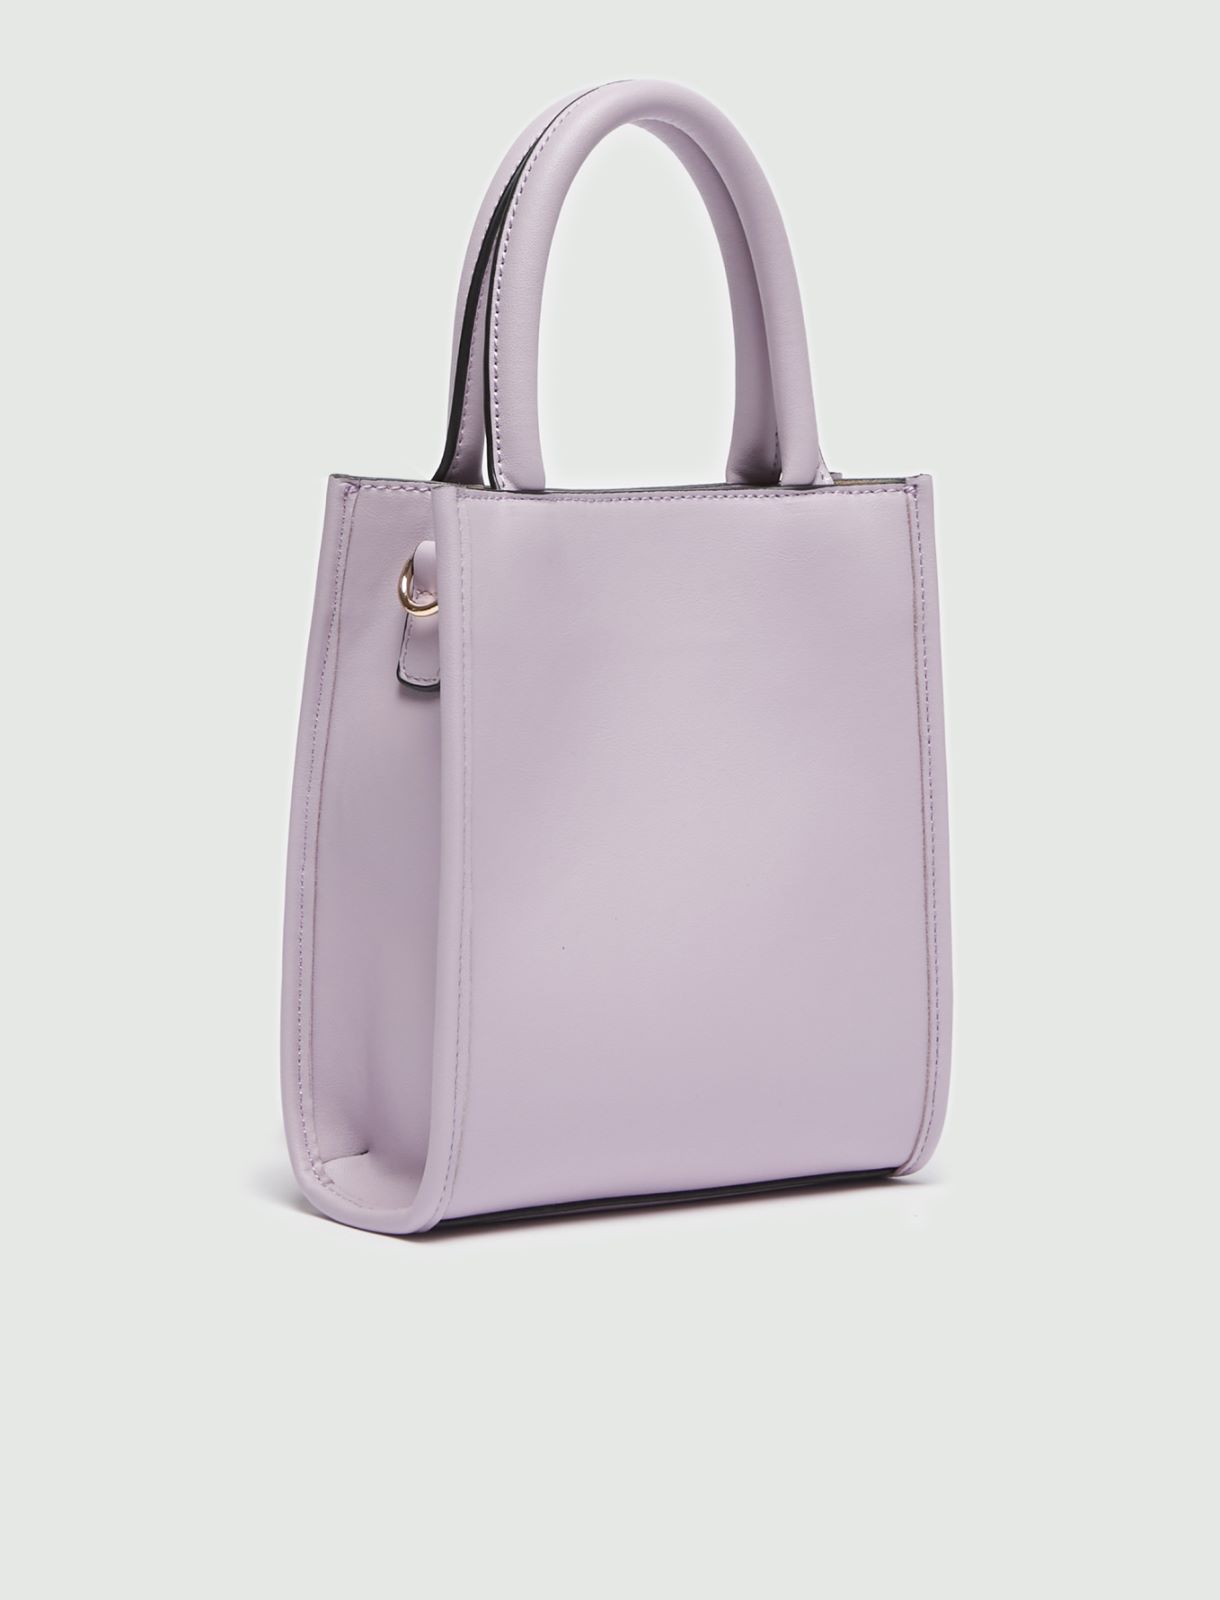 Small bag - Lilac - Marina Rinaldi - 2